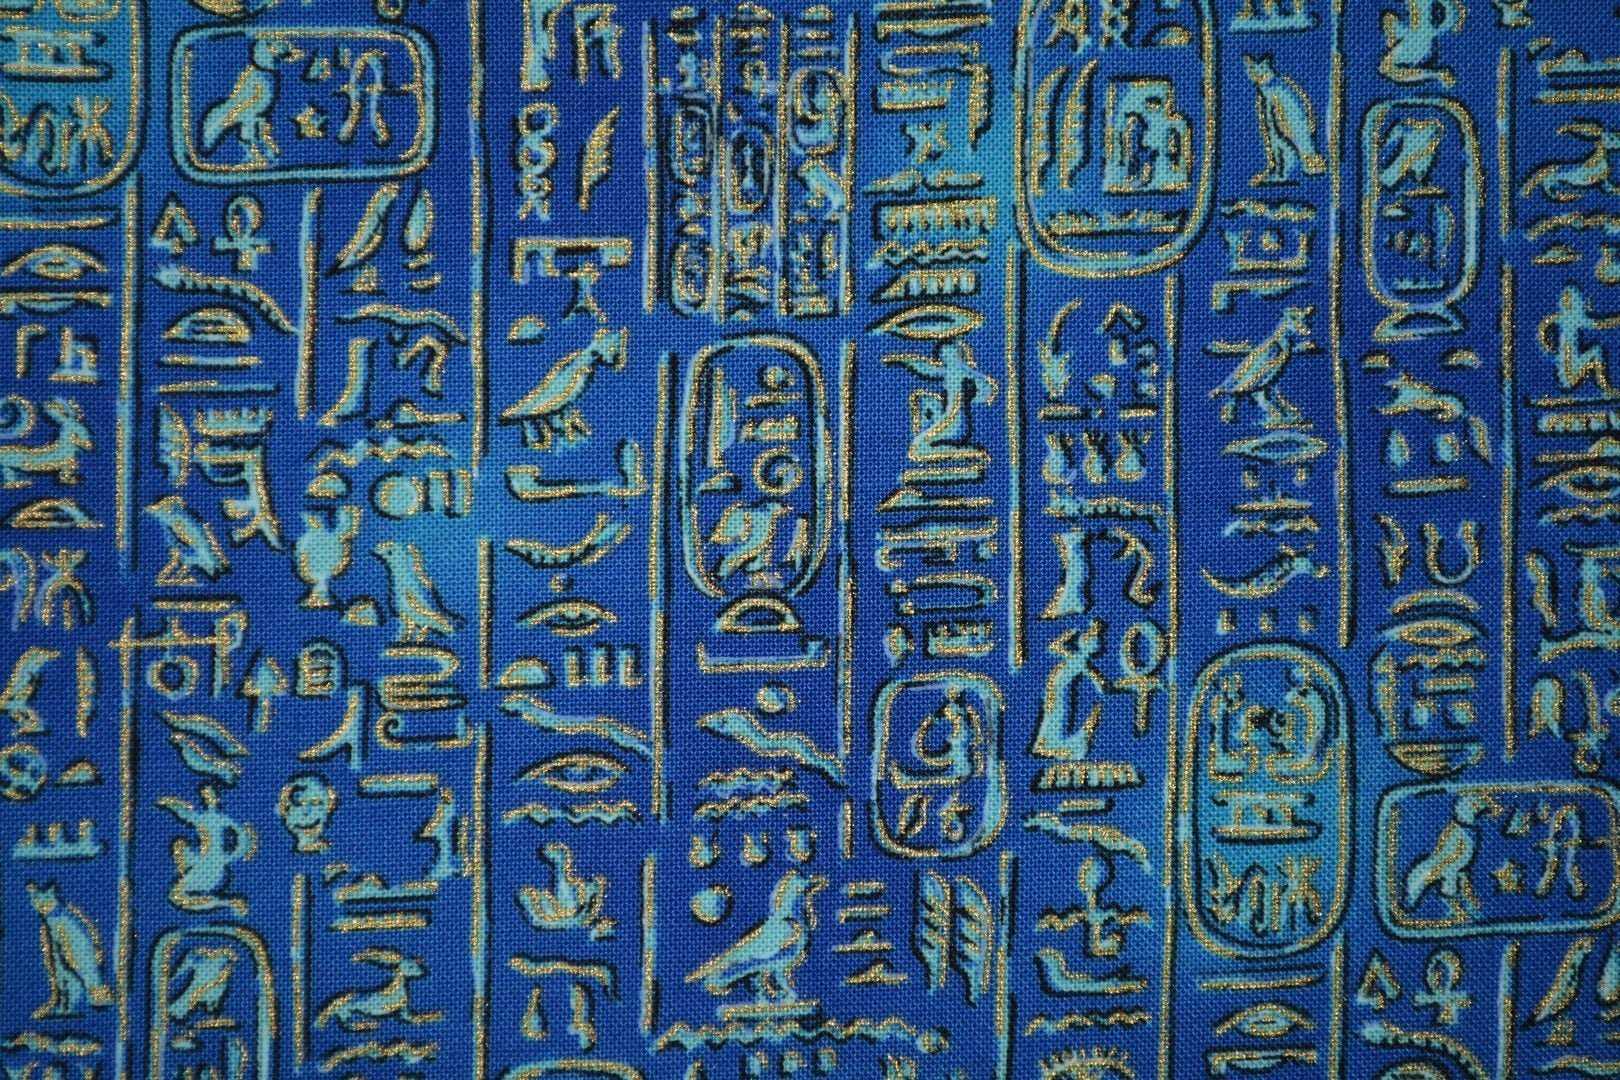 Макияж в древнем египте